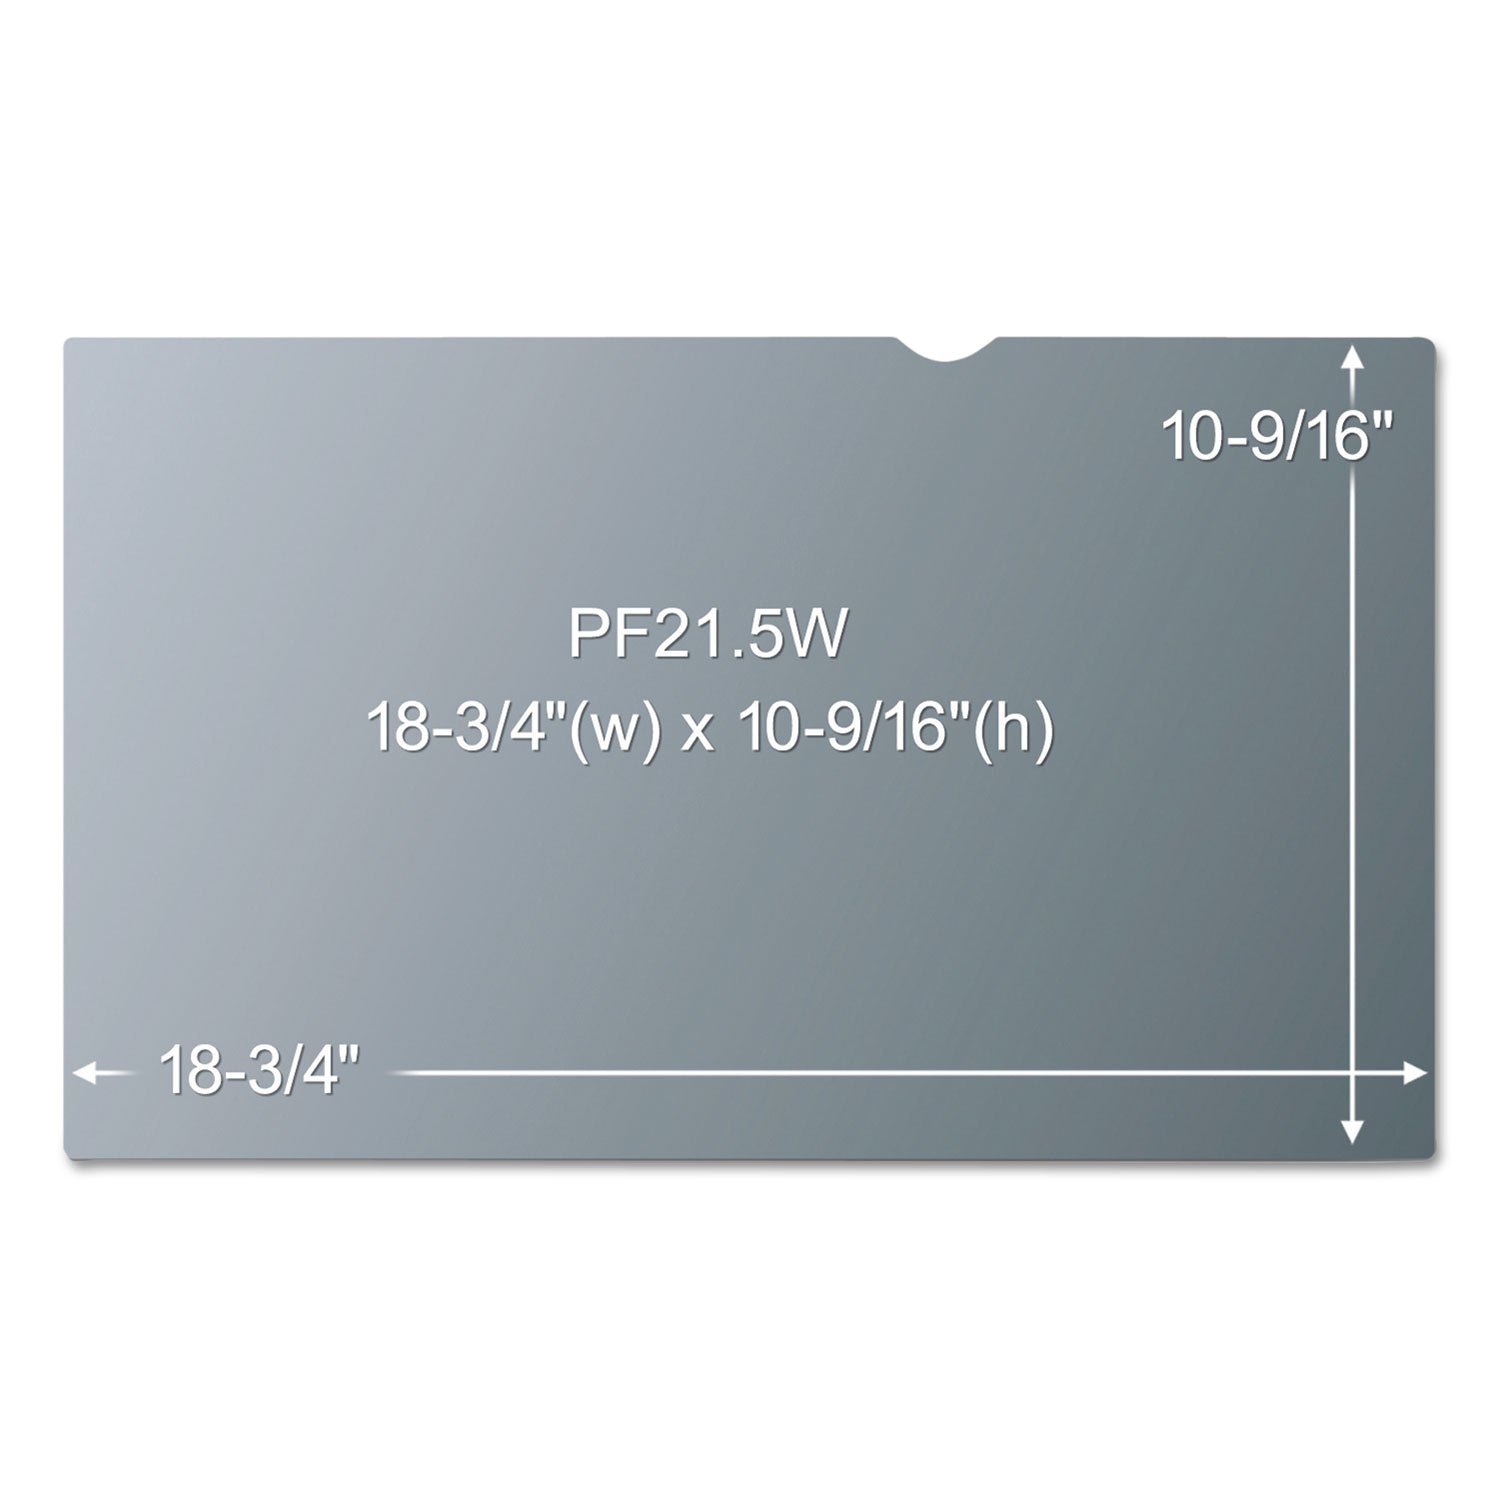 Antiglare Frameless Filter for 21.5" Widescreen Flat Panel Monitor, 16:9 Aspect Ratio - 